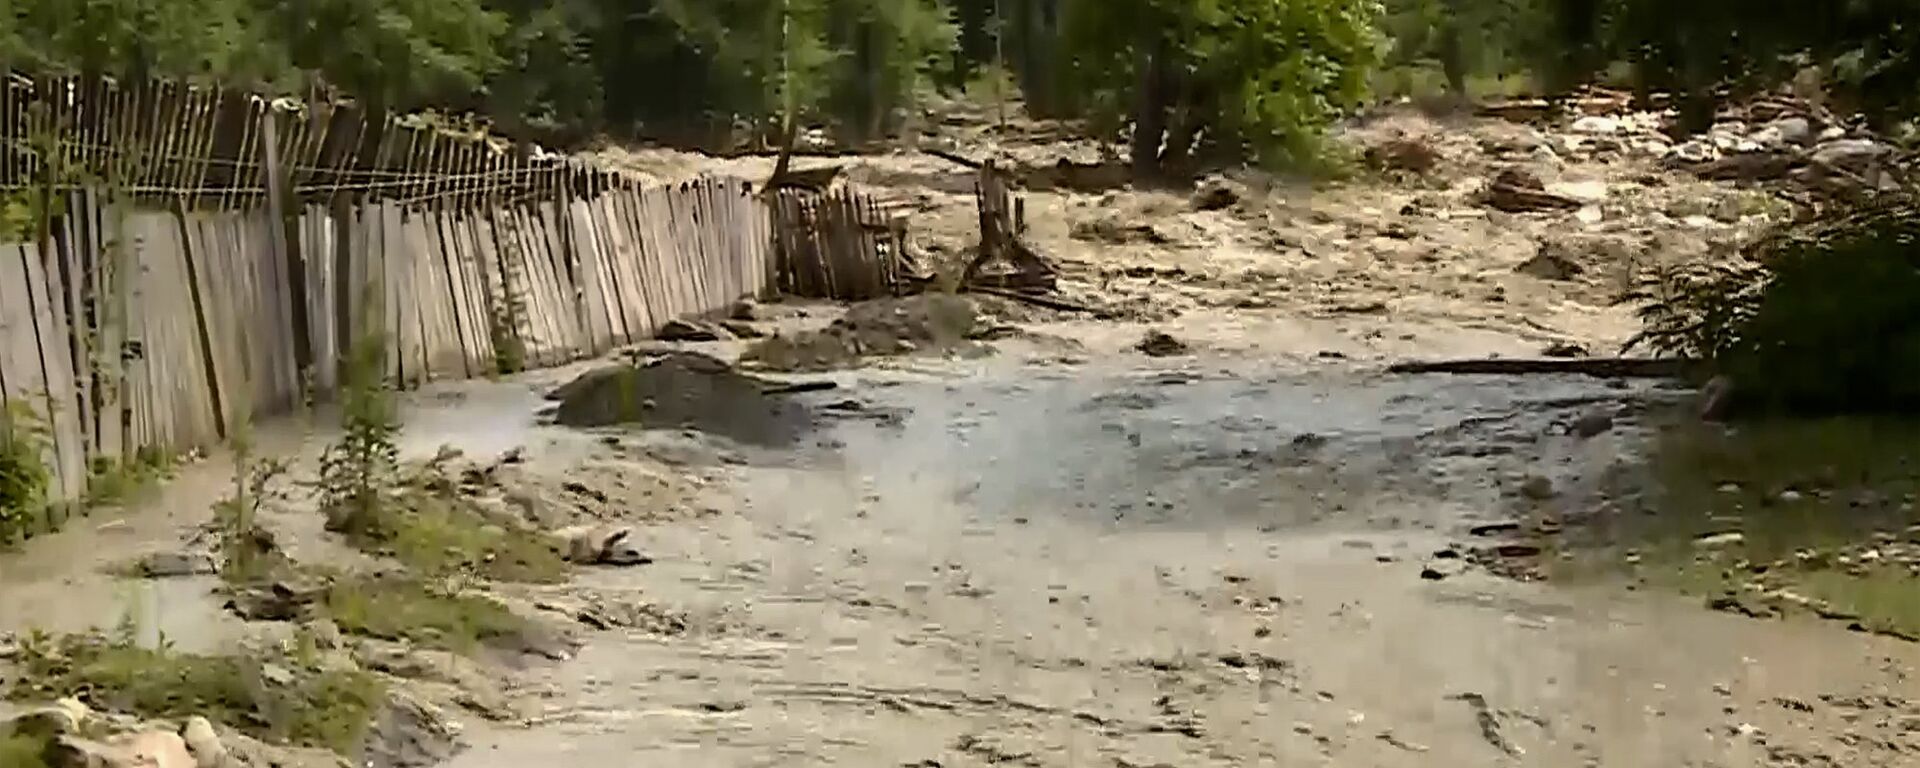 Наводнение в Сванетии - река Ненскра - Sputnik Грузия, 1920, 27.04.2021